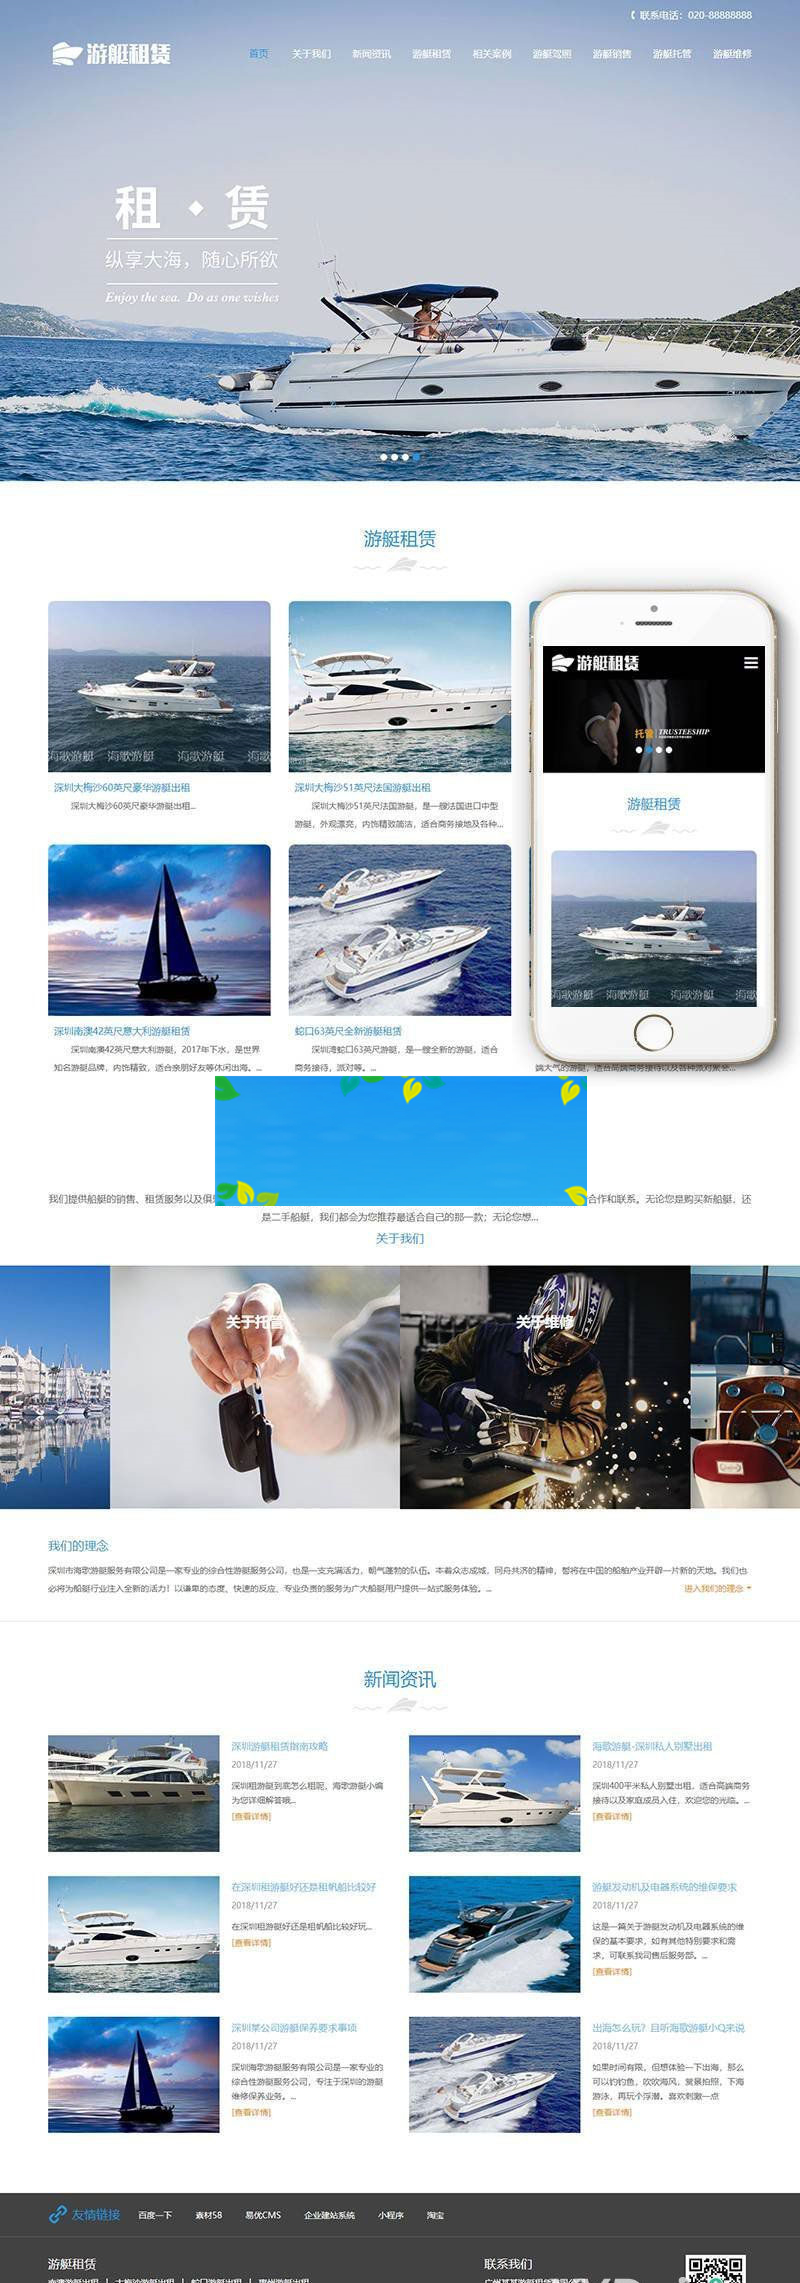 织梦dedecms相应式游艇租赁公司网站模板(自顺应手机移动端)-零度空间